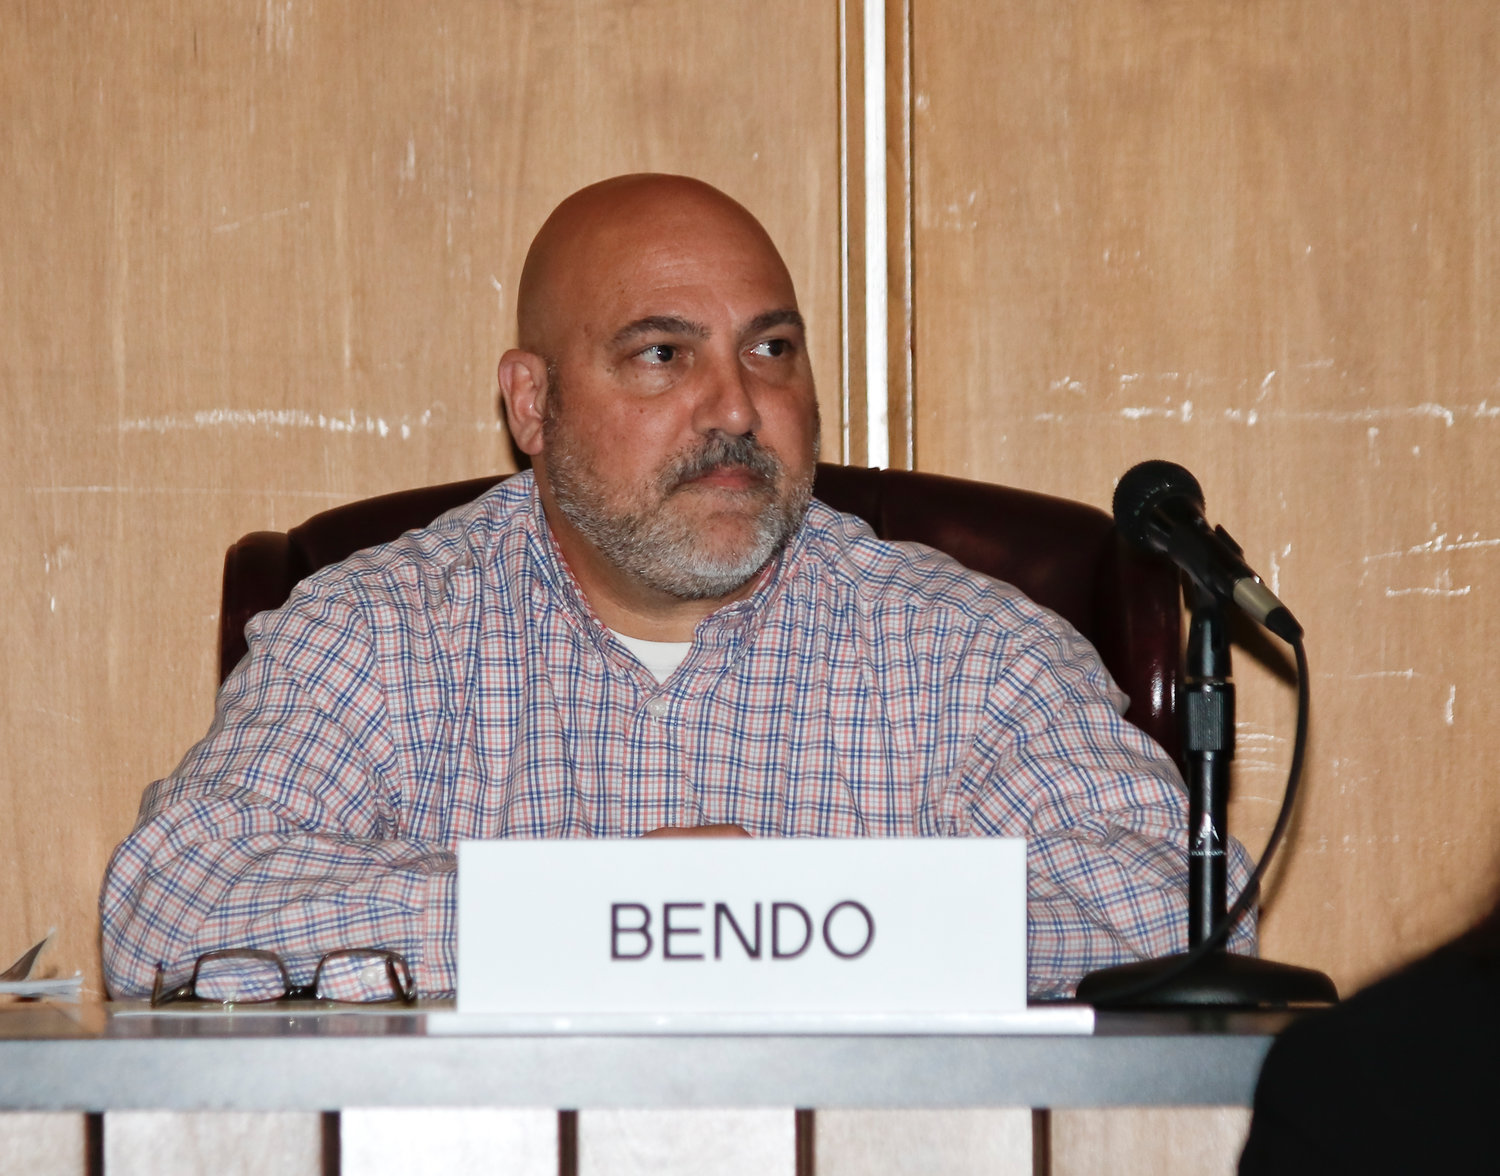 City Council Vice President John Bendo.